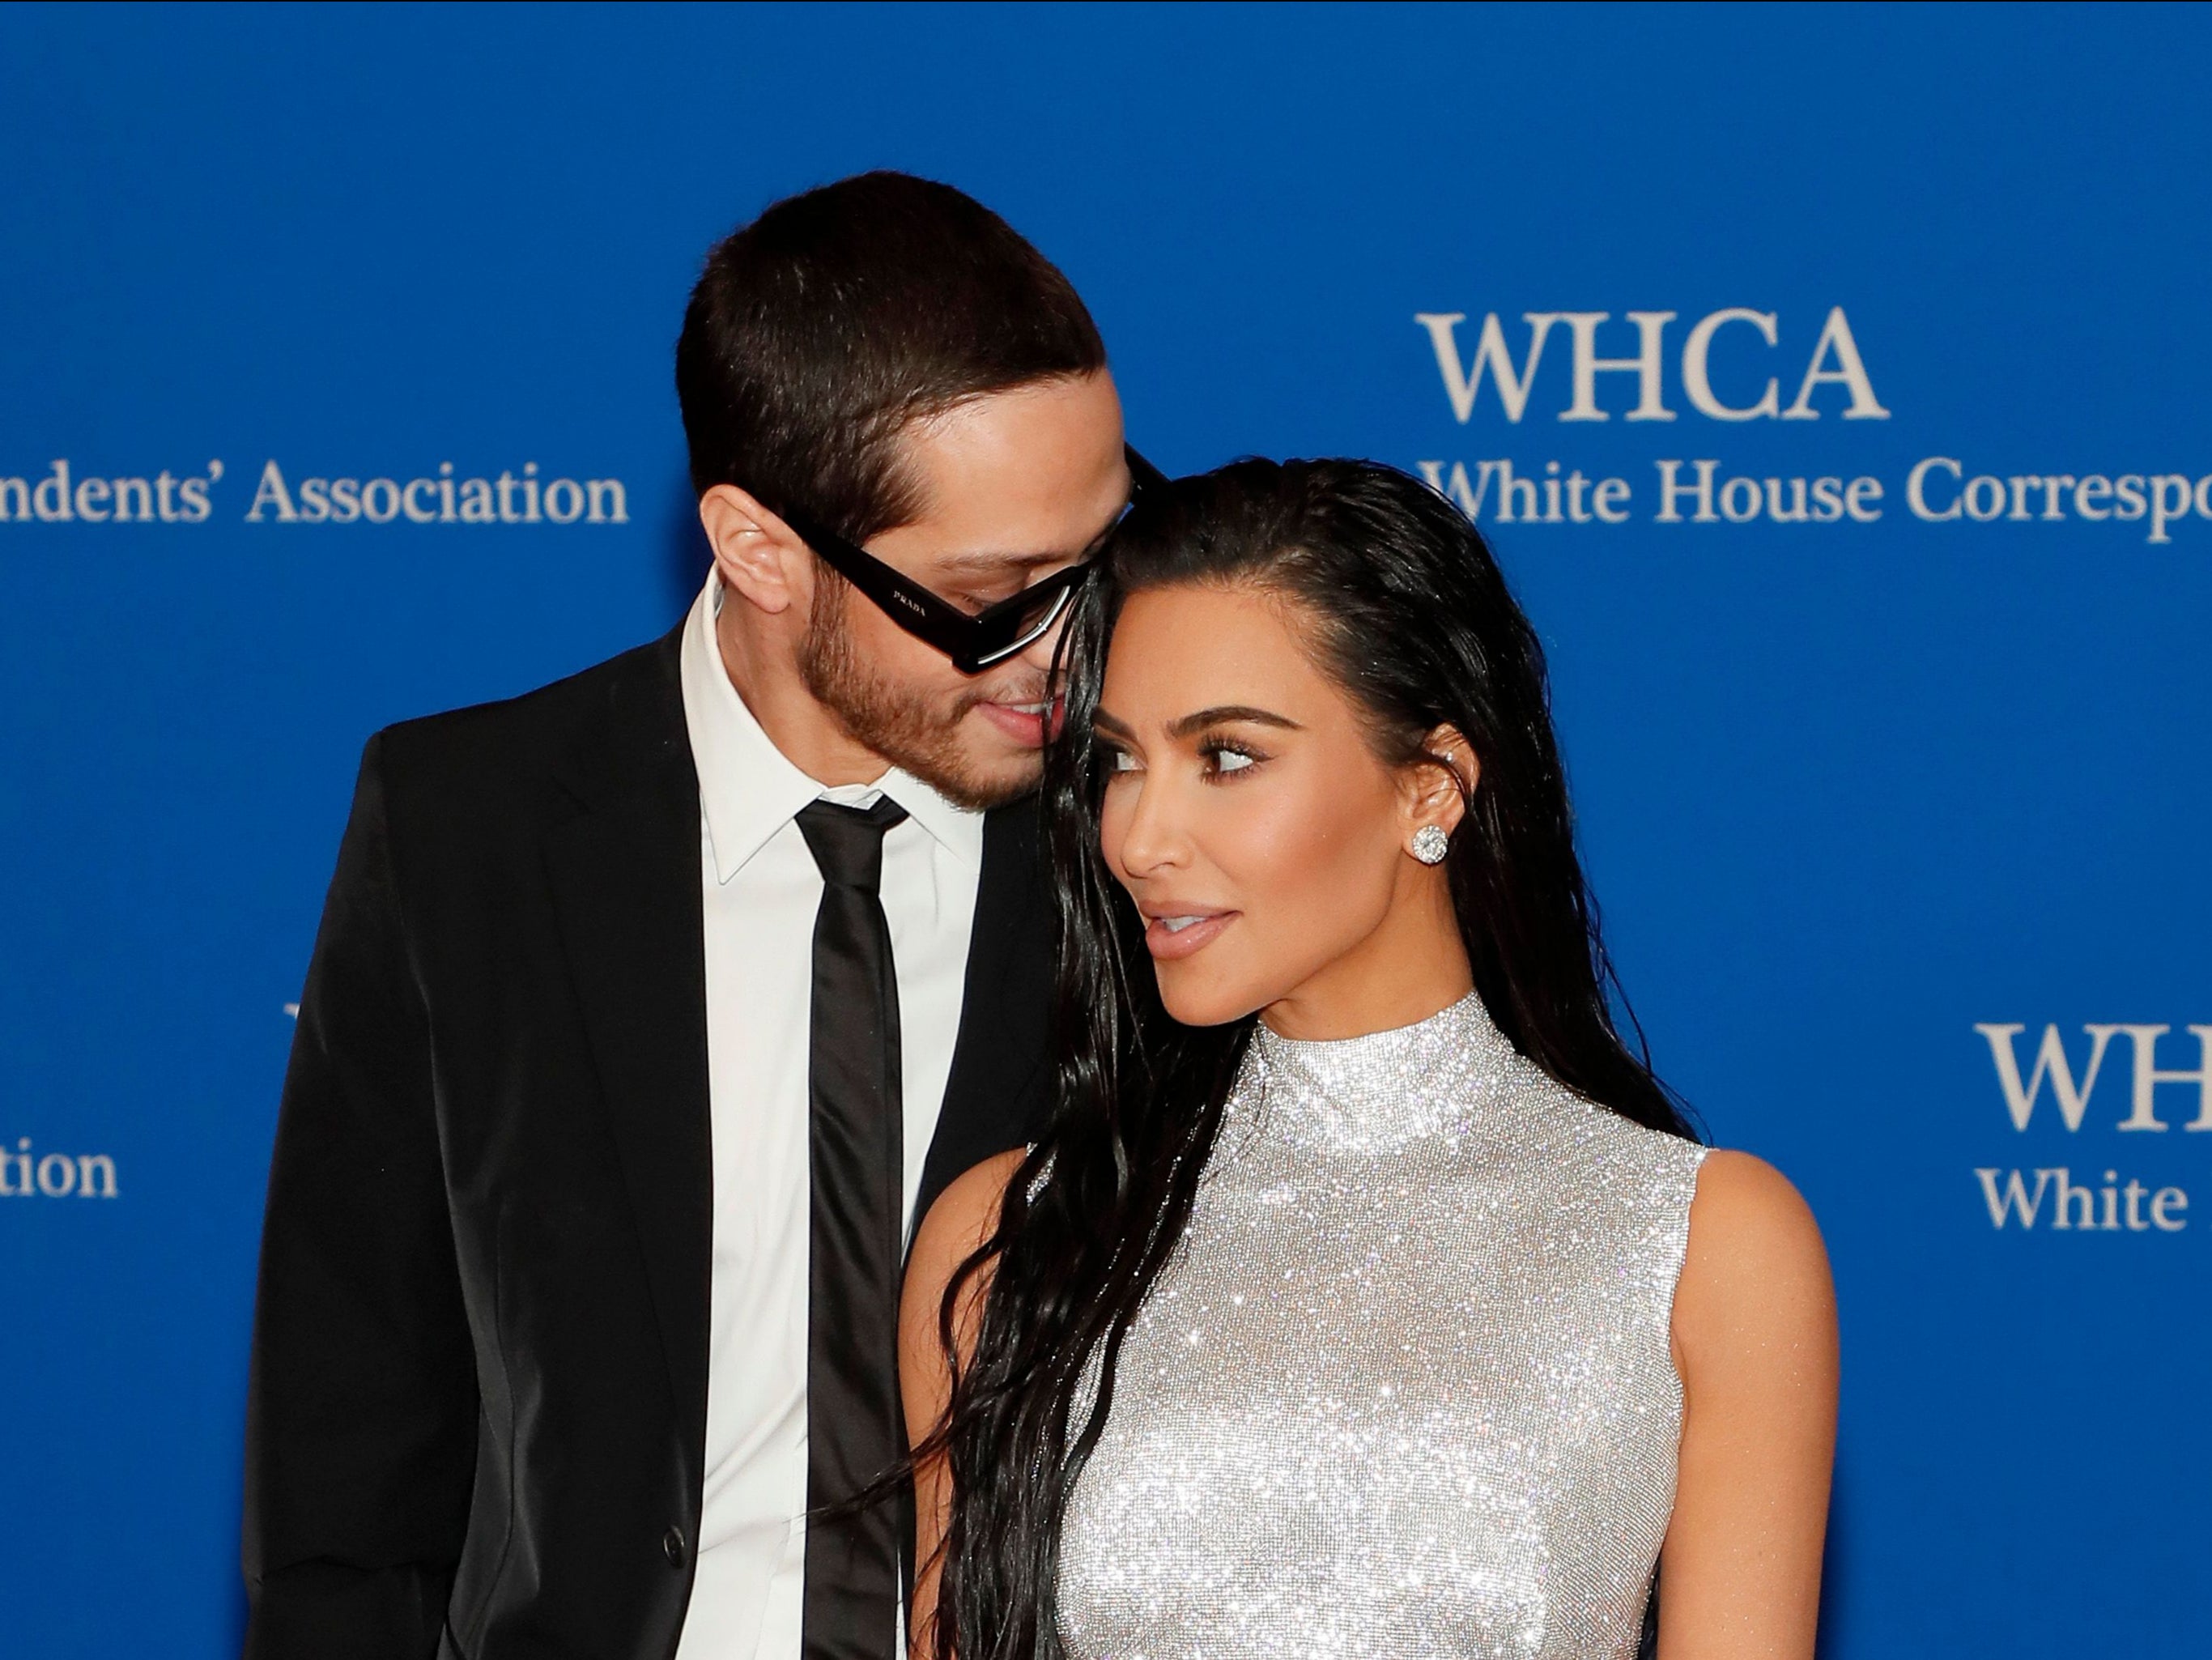 Pete Davidson and Kim Kardashian attend the 2022 White House Correspondents' Association Dinner at Washington Hilton on April 30, 2022